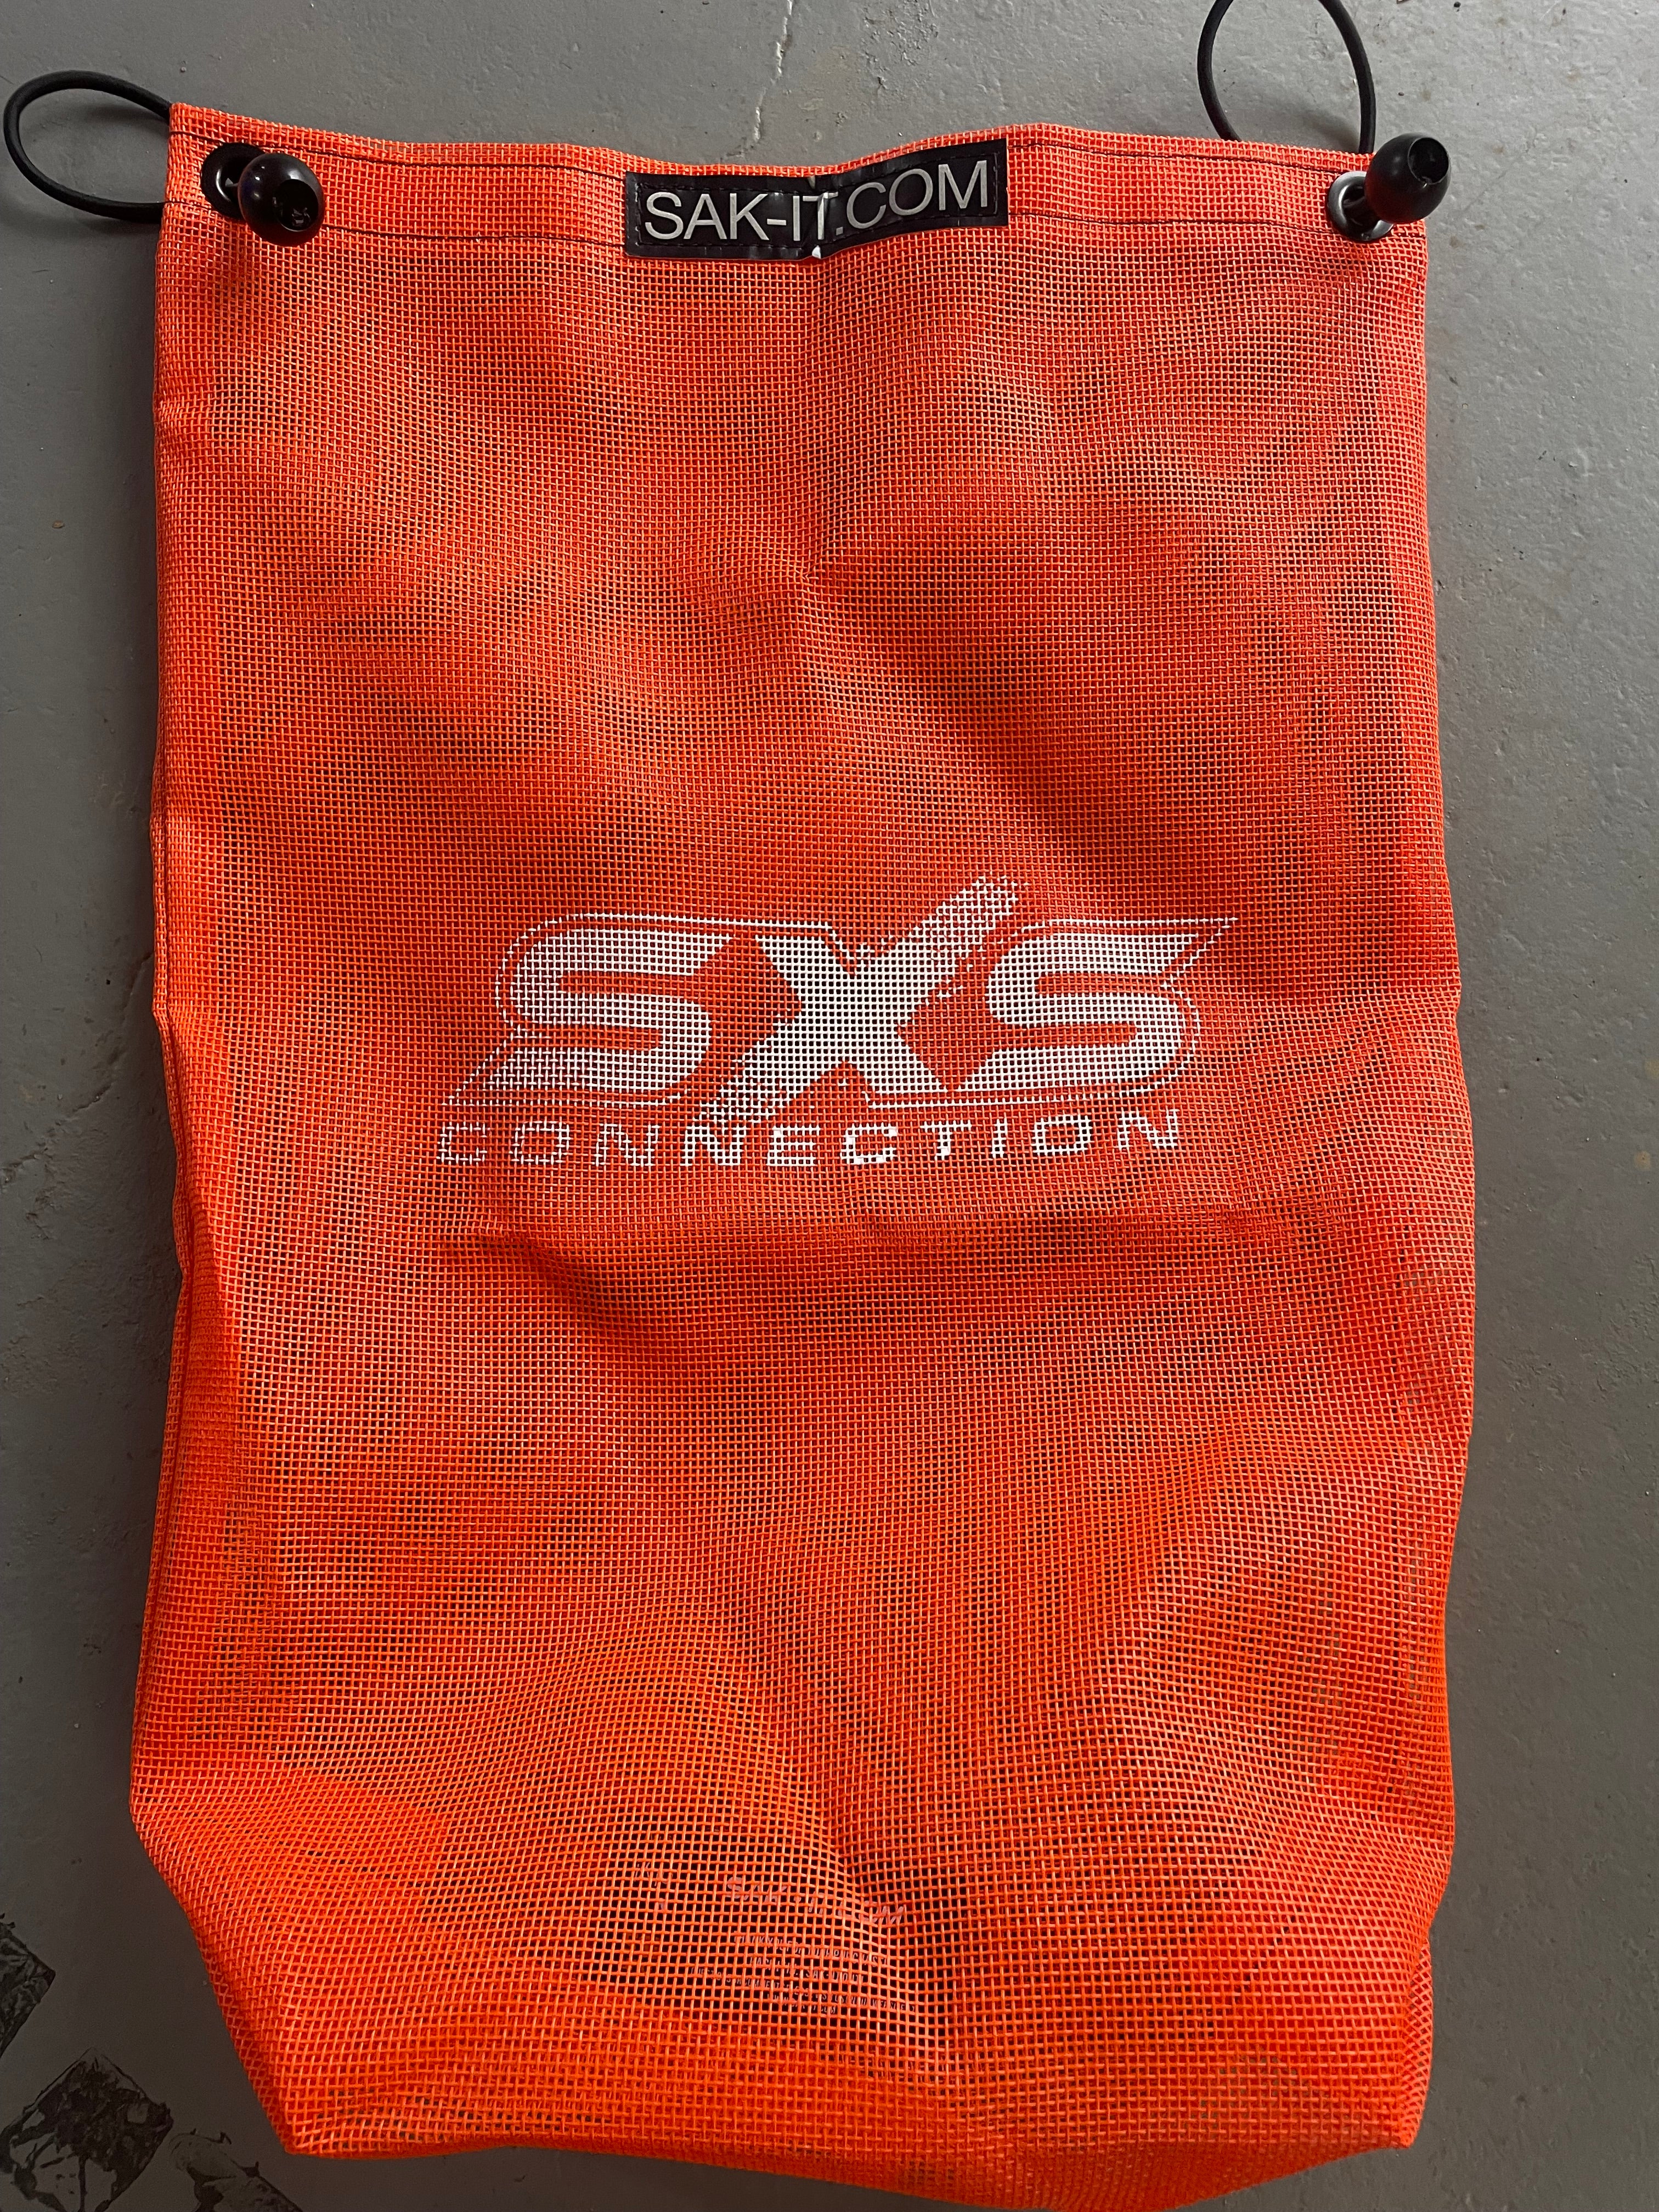 SXS CONNECTION SCRAP SAK